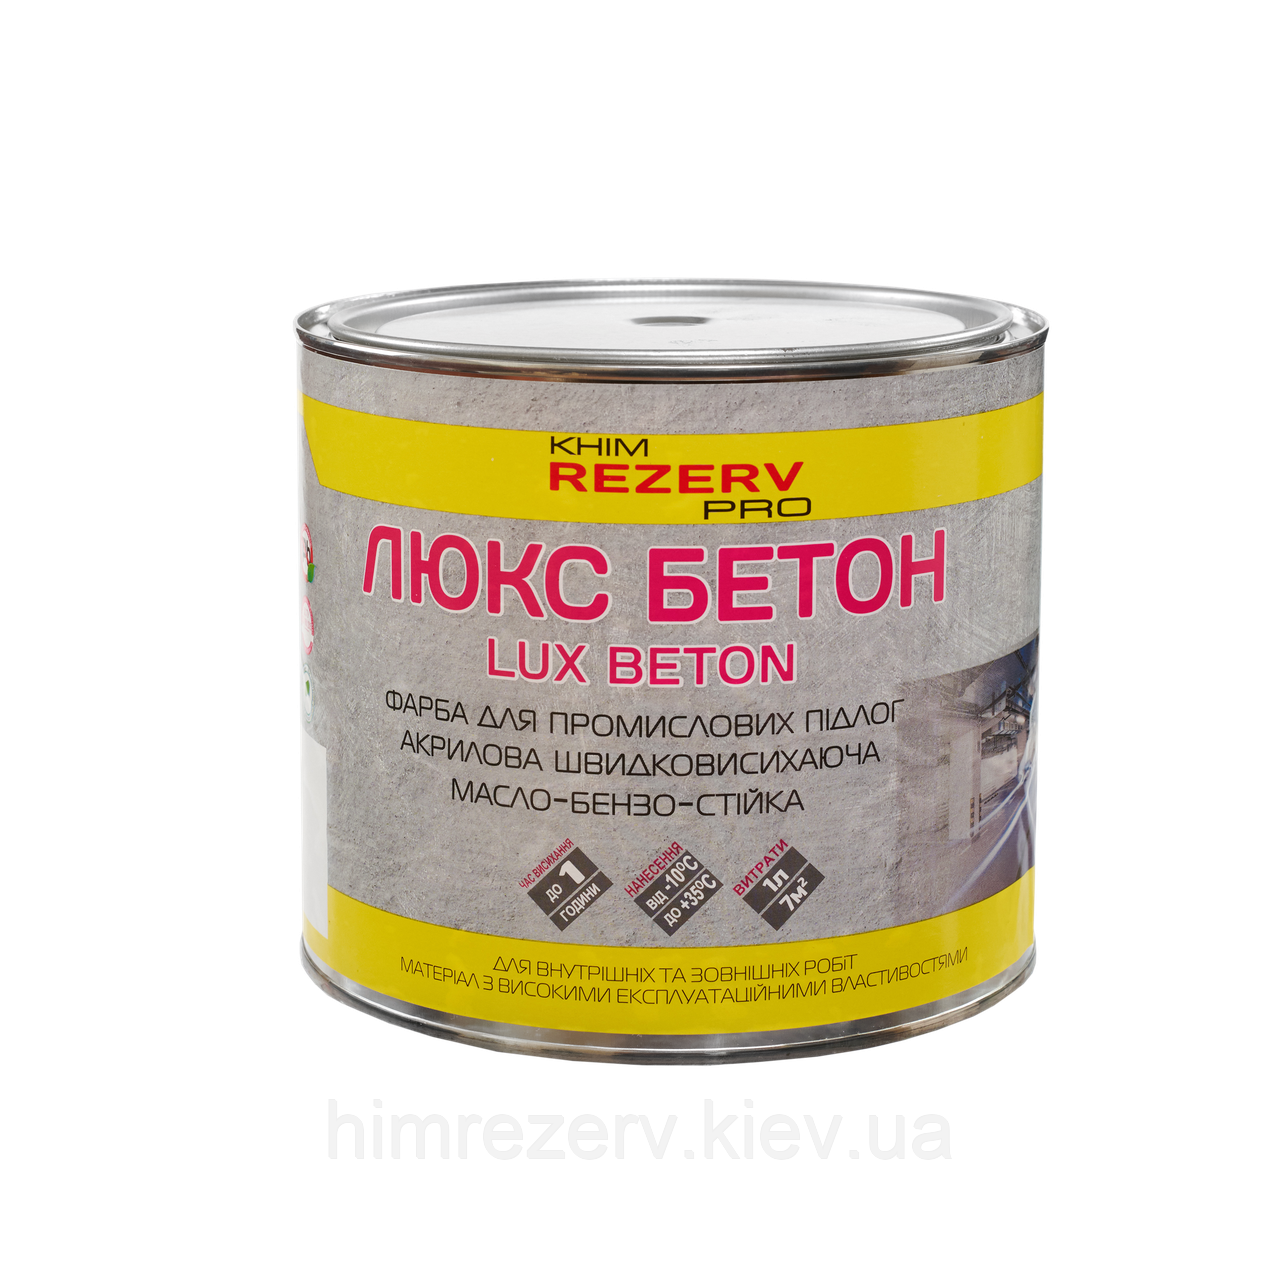 Фарба для бетонних підлог "Люкс-Бетон" KhimrezervPRO 2.7кг кольори в асортименті